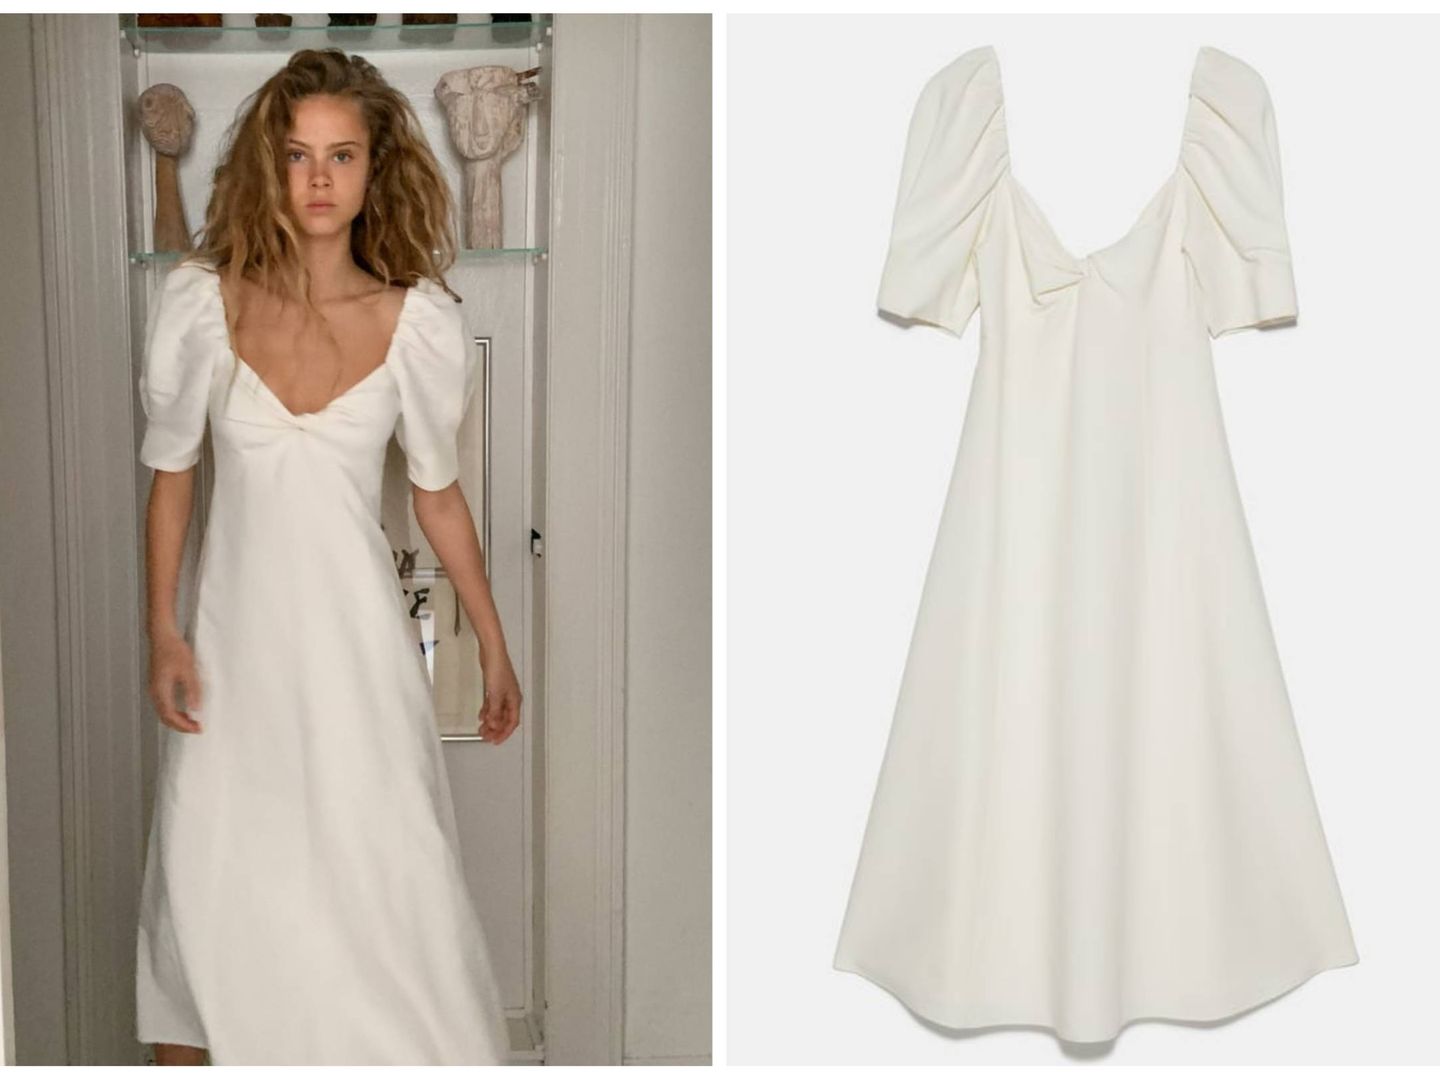 Un vestido de Zara perfecto para tu boda. (Cortesía)